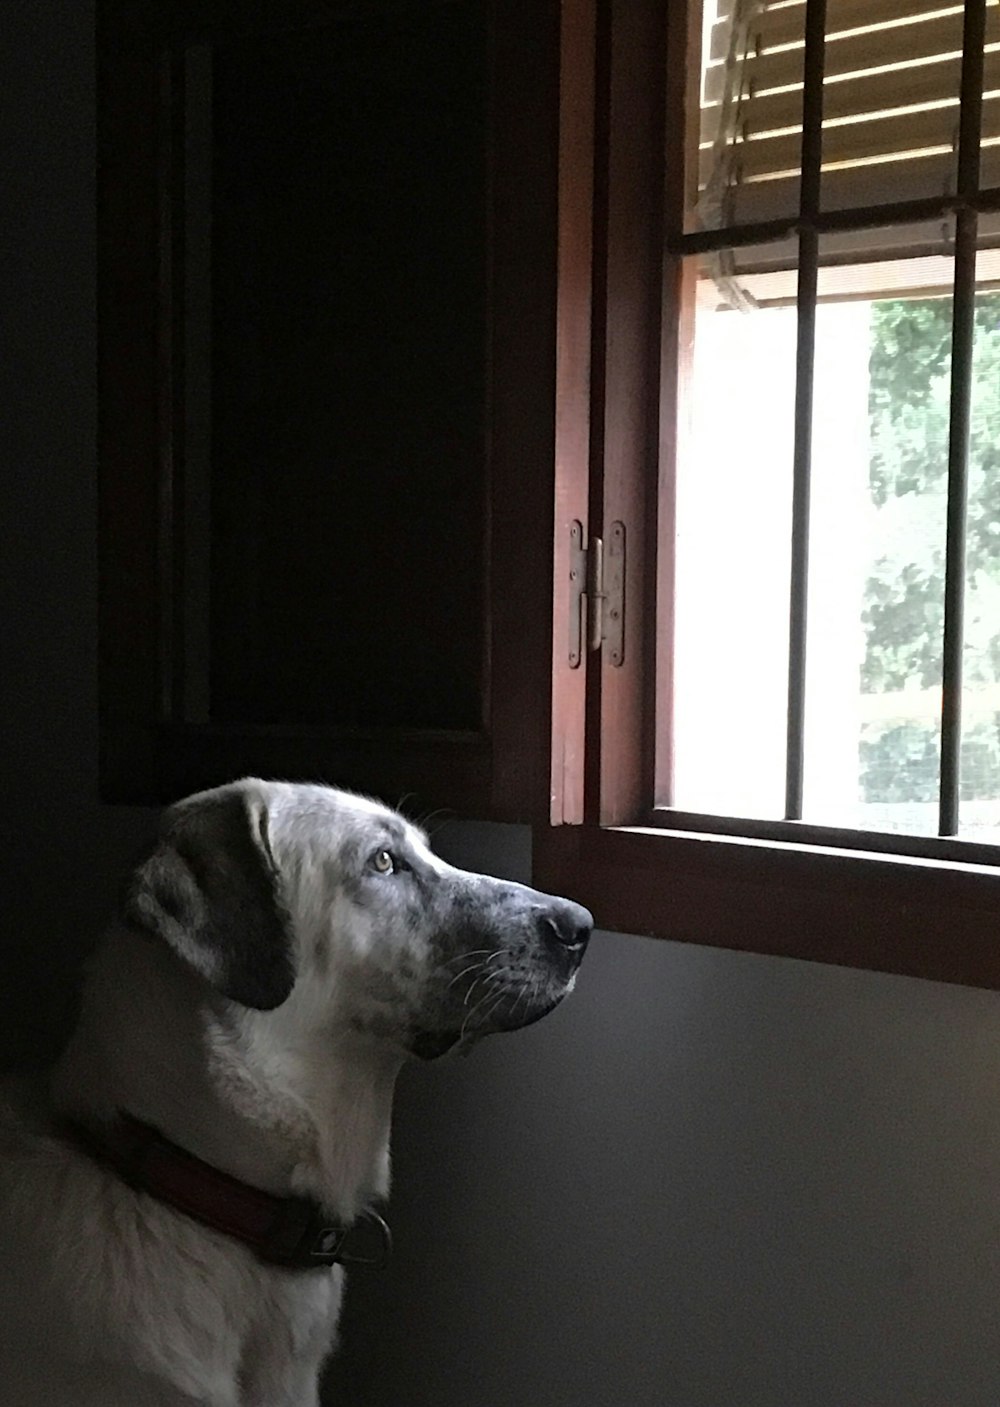 cane bianco a pelo corto vicino alla finestra aperta